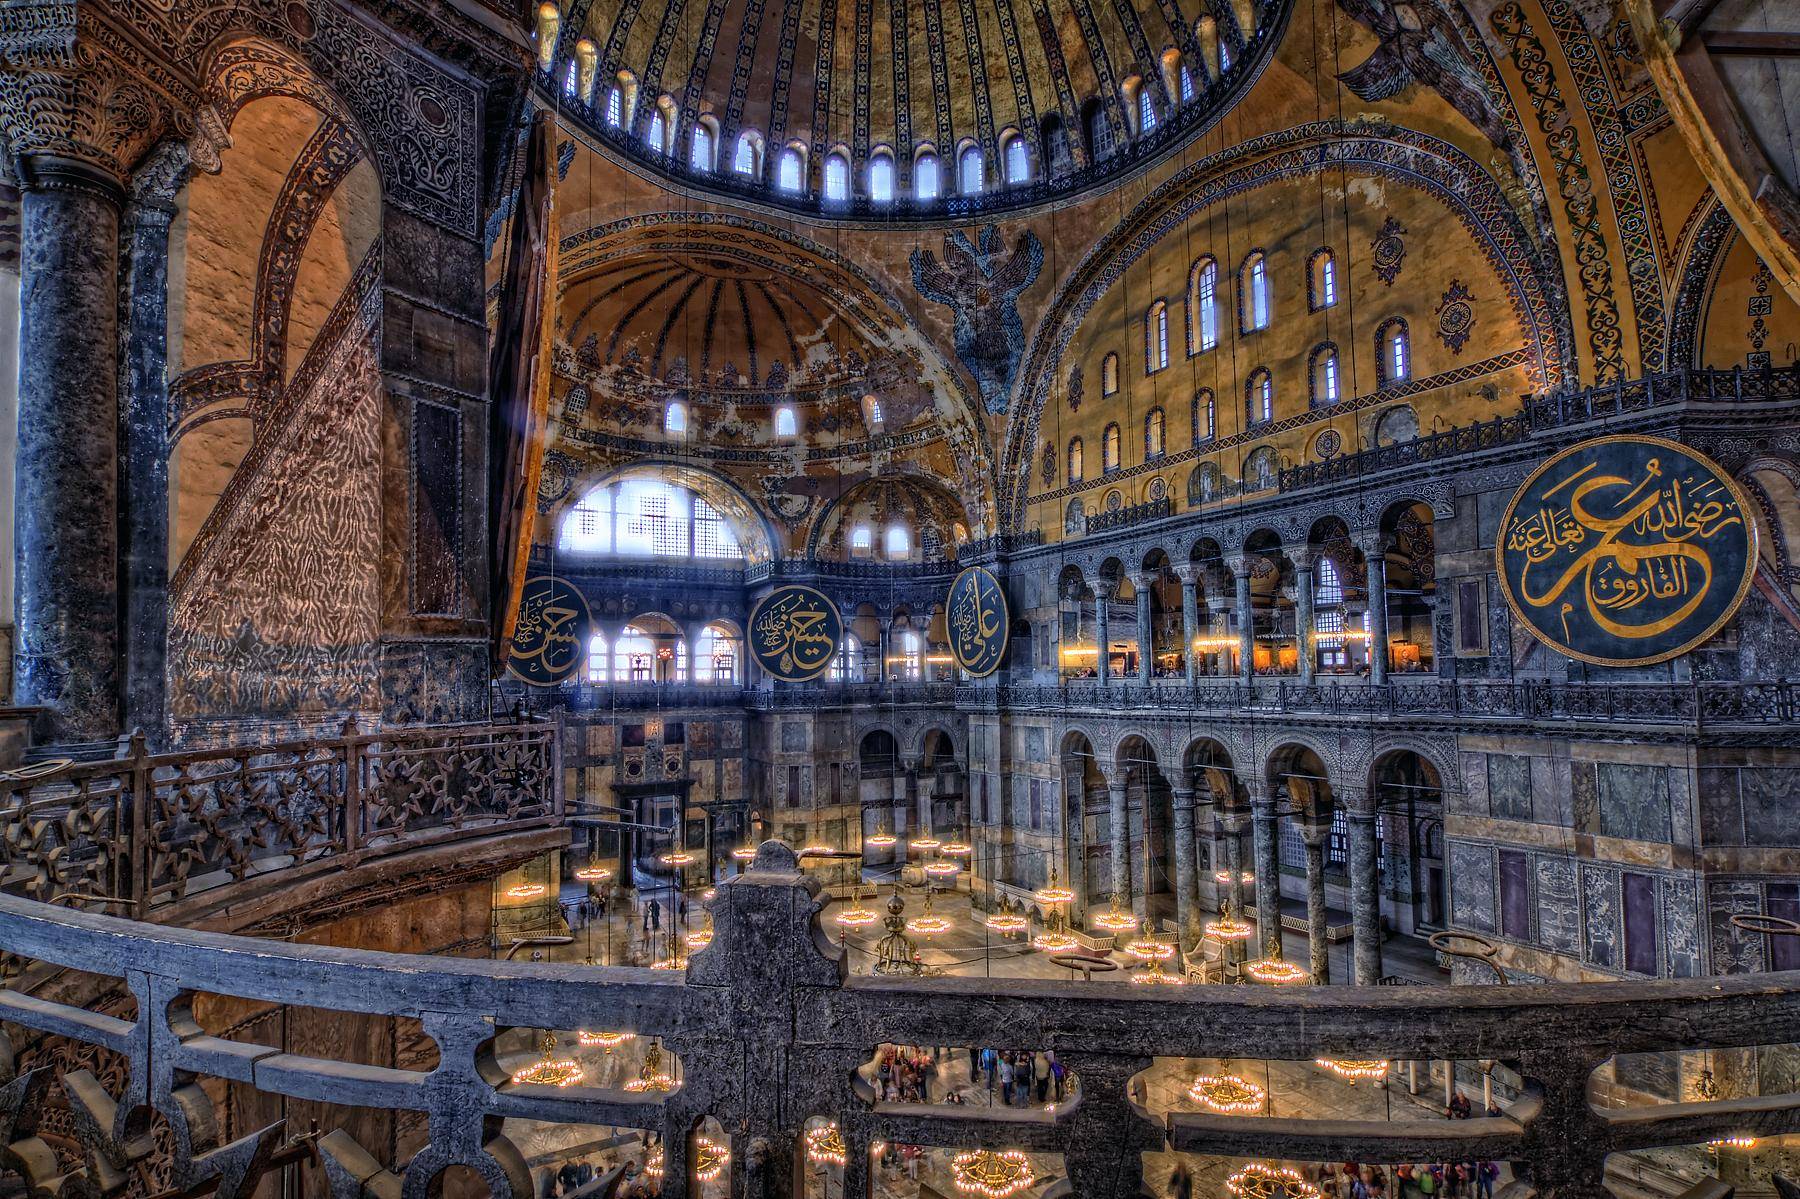 Inside The Hagia Sophia.